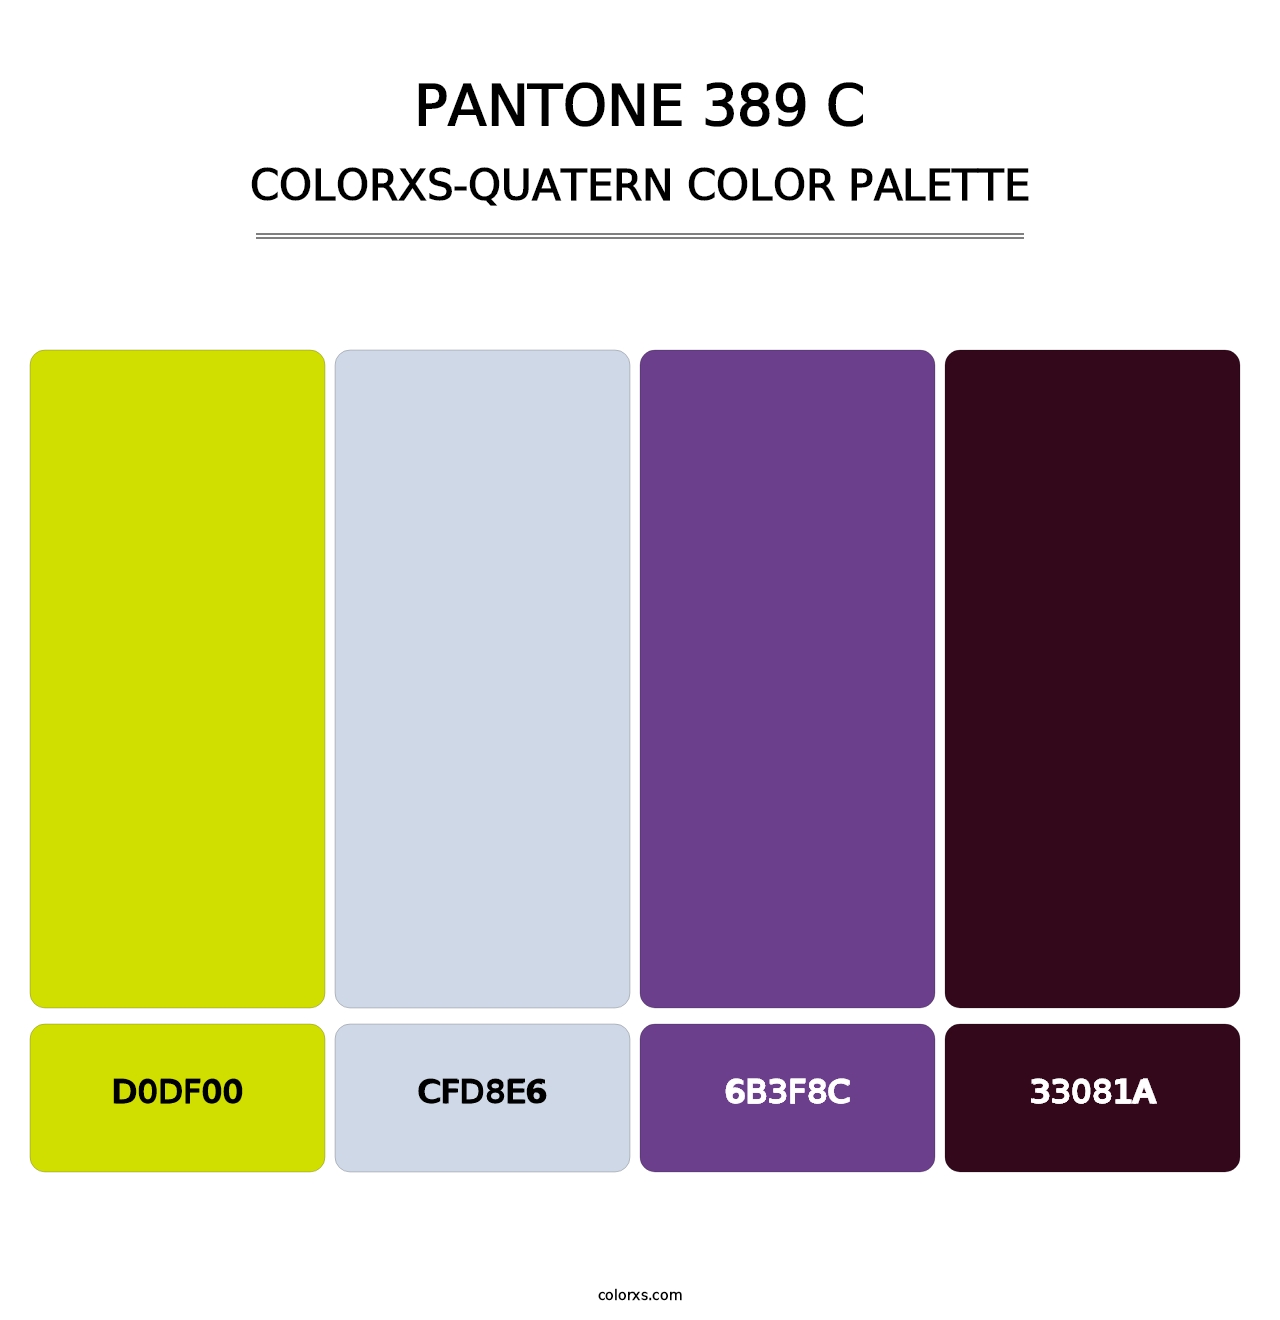 PANTONE 389 C - Colorxs Quatern Palette